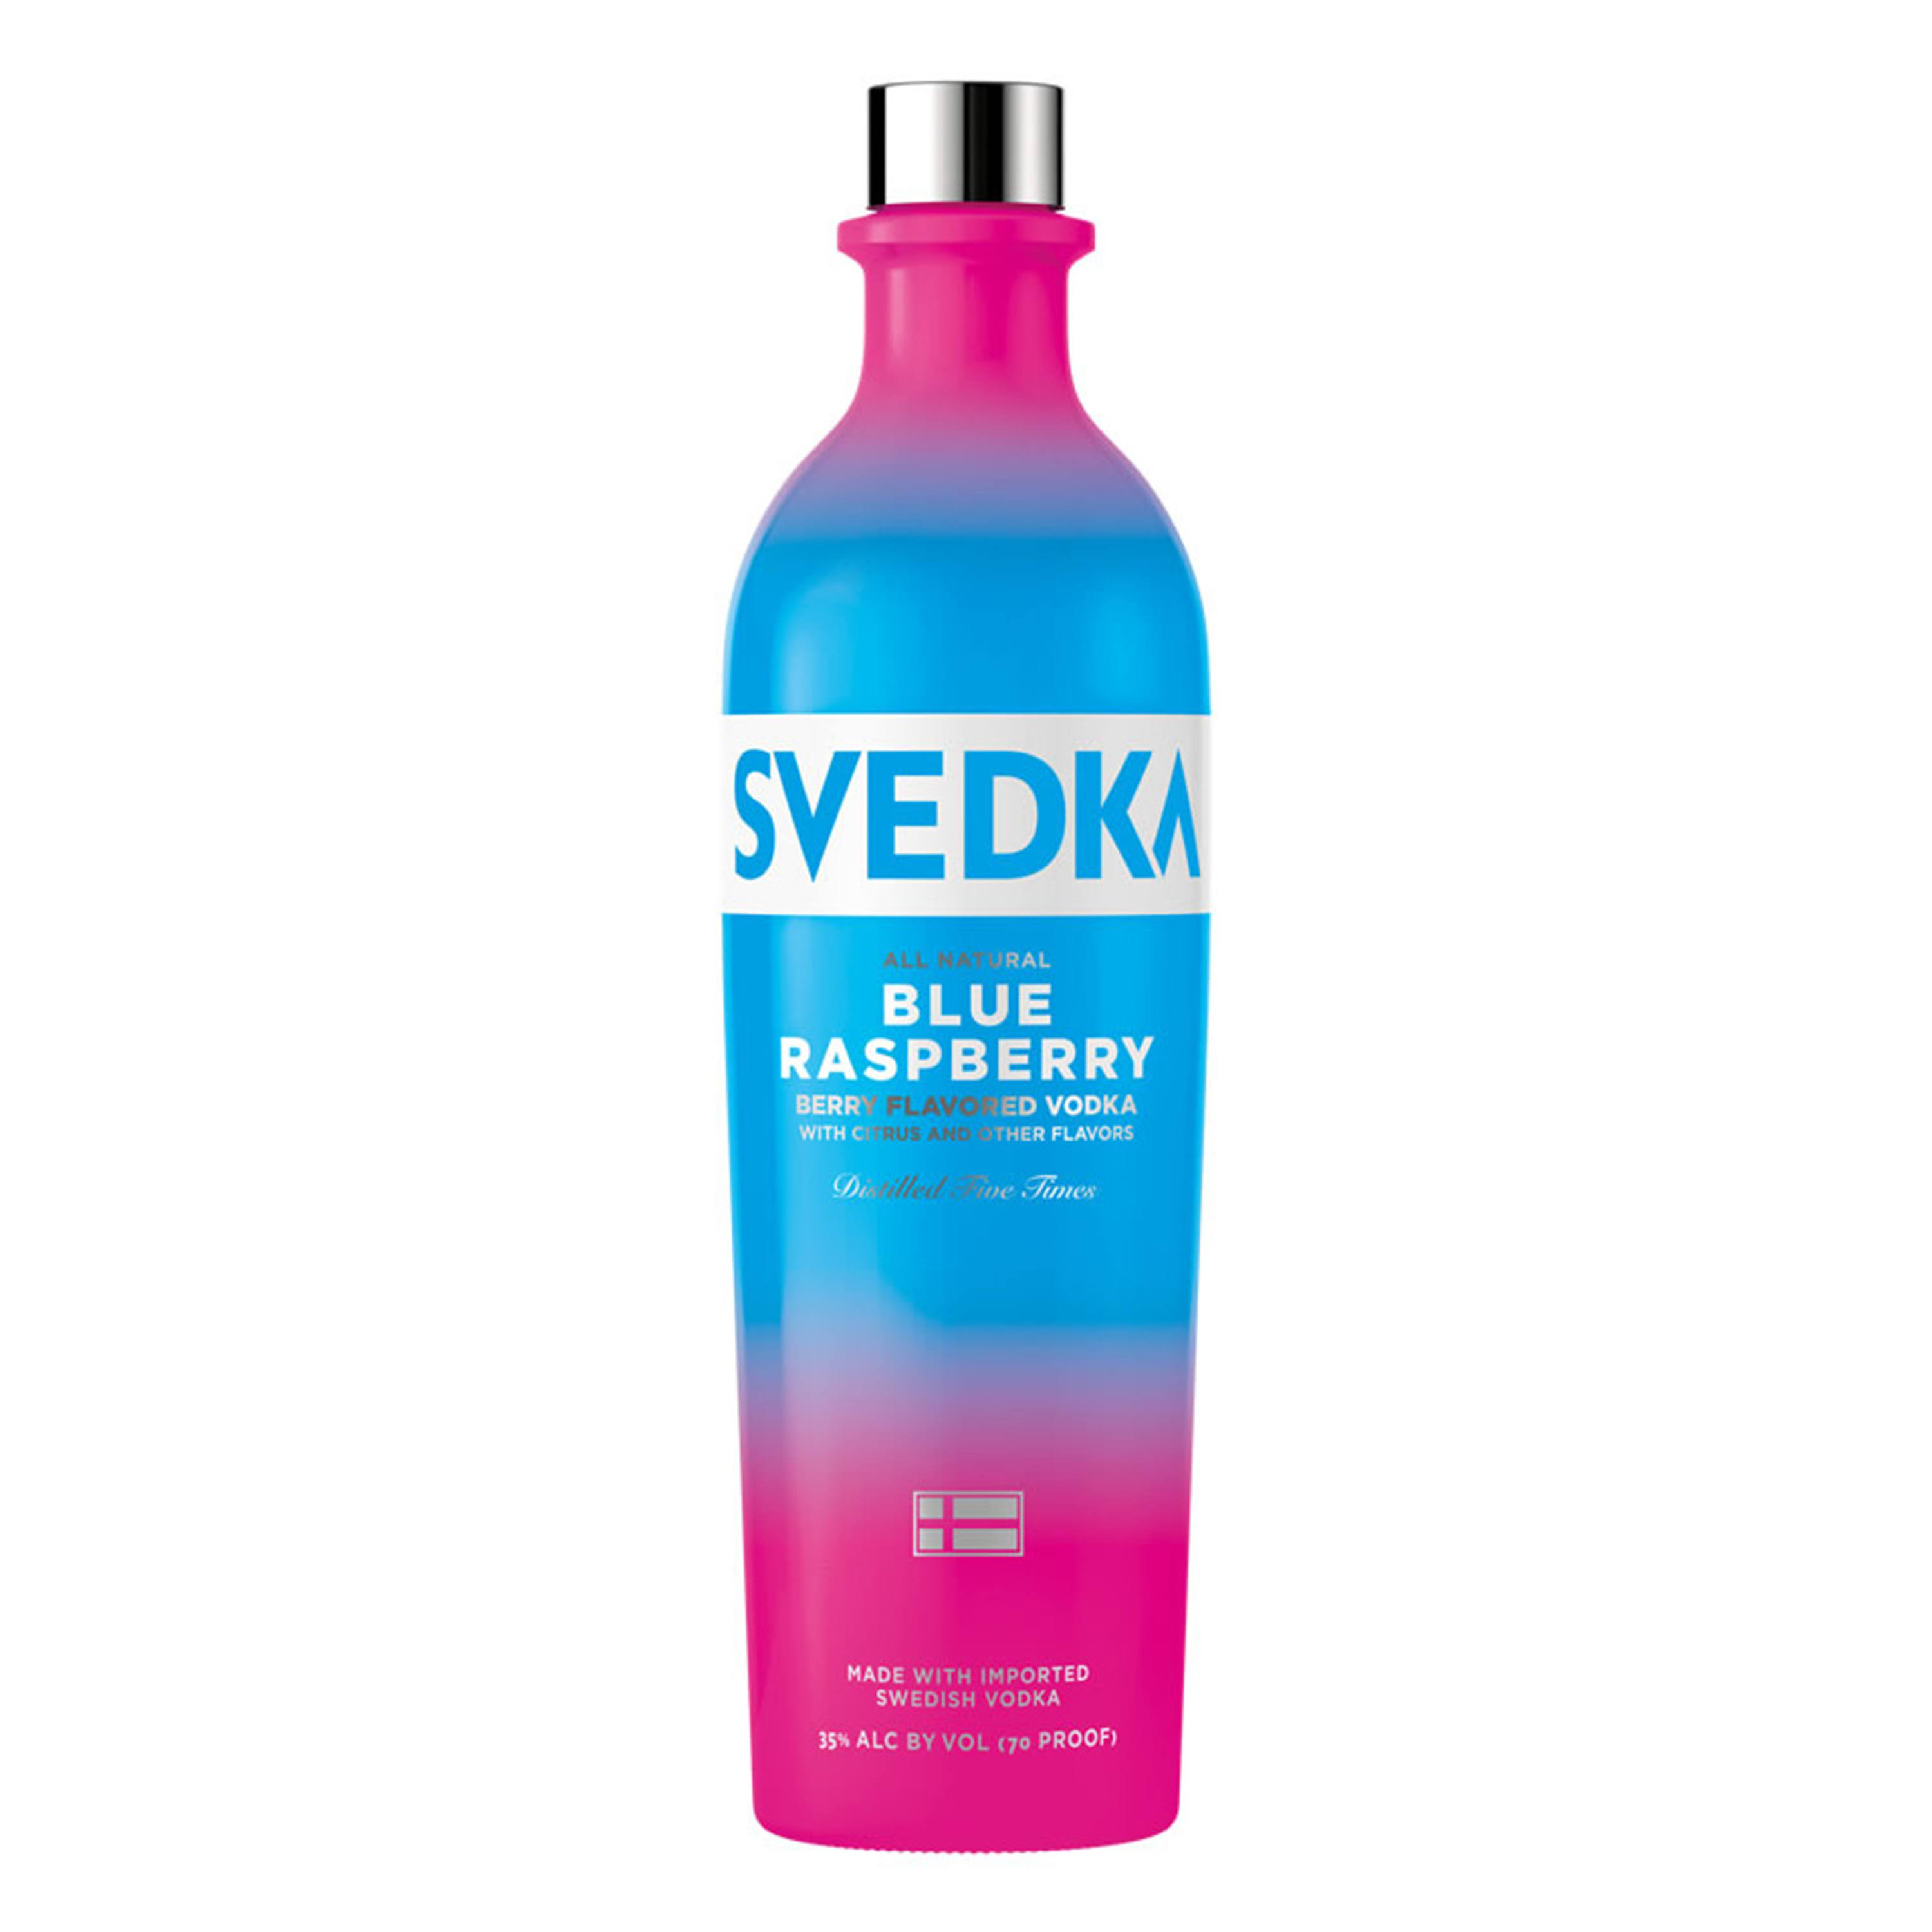 Svedka Flavored Vodka, Blue Raspberry - 750 ml